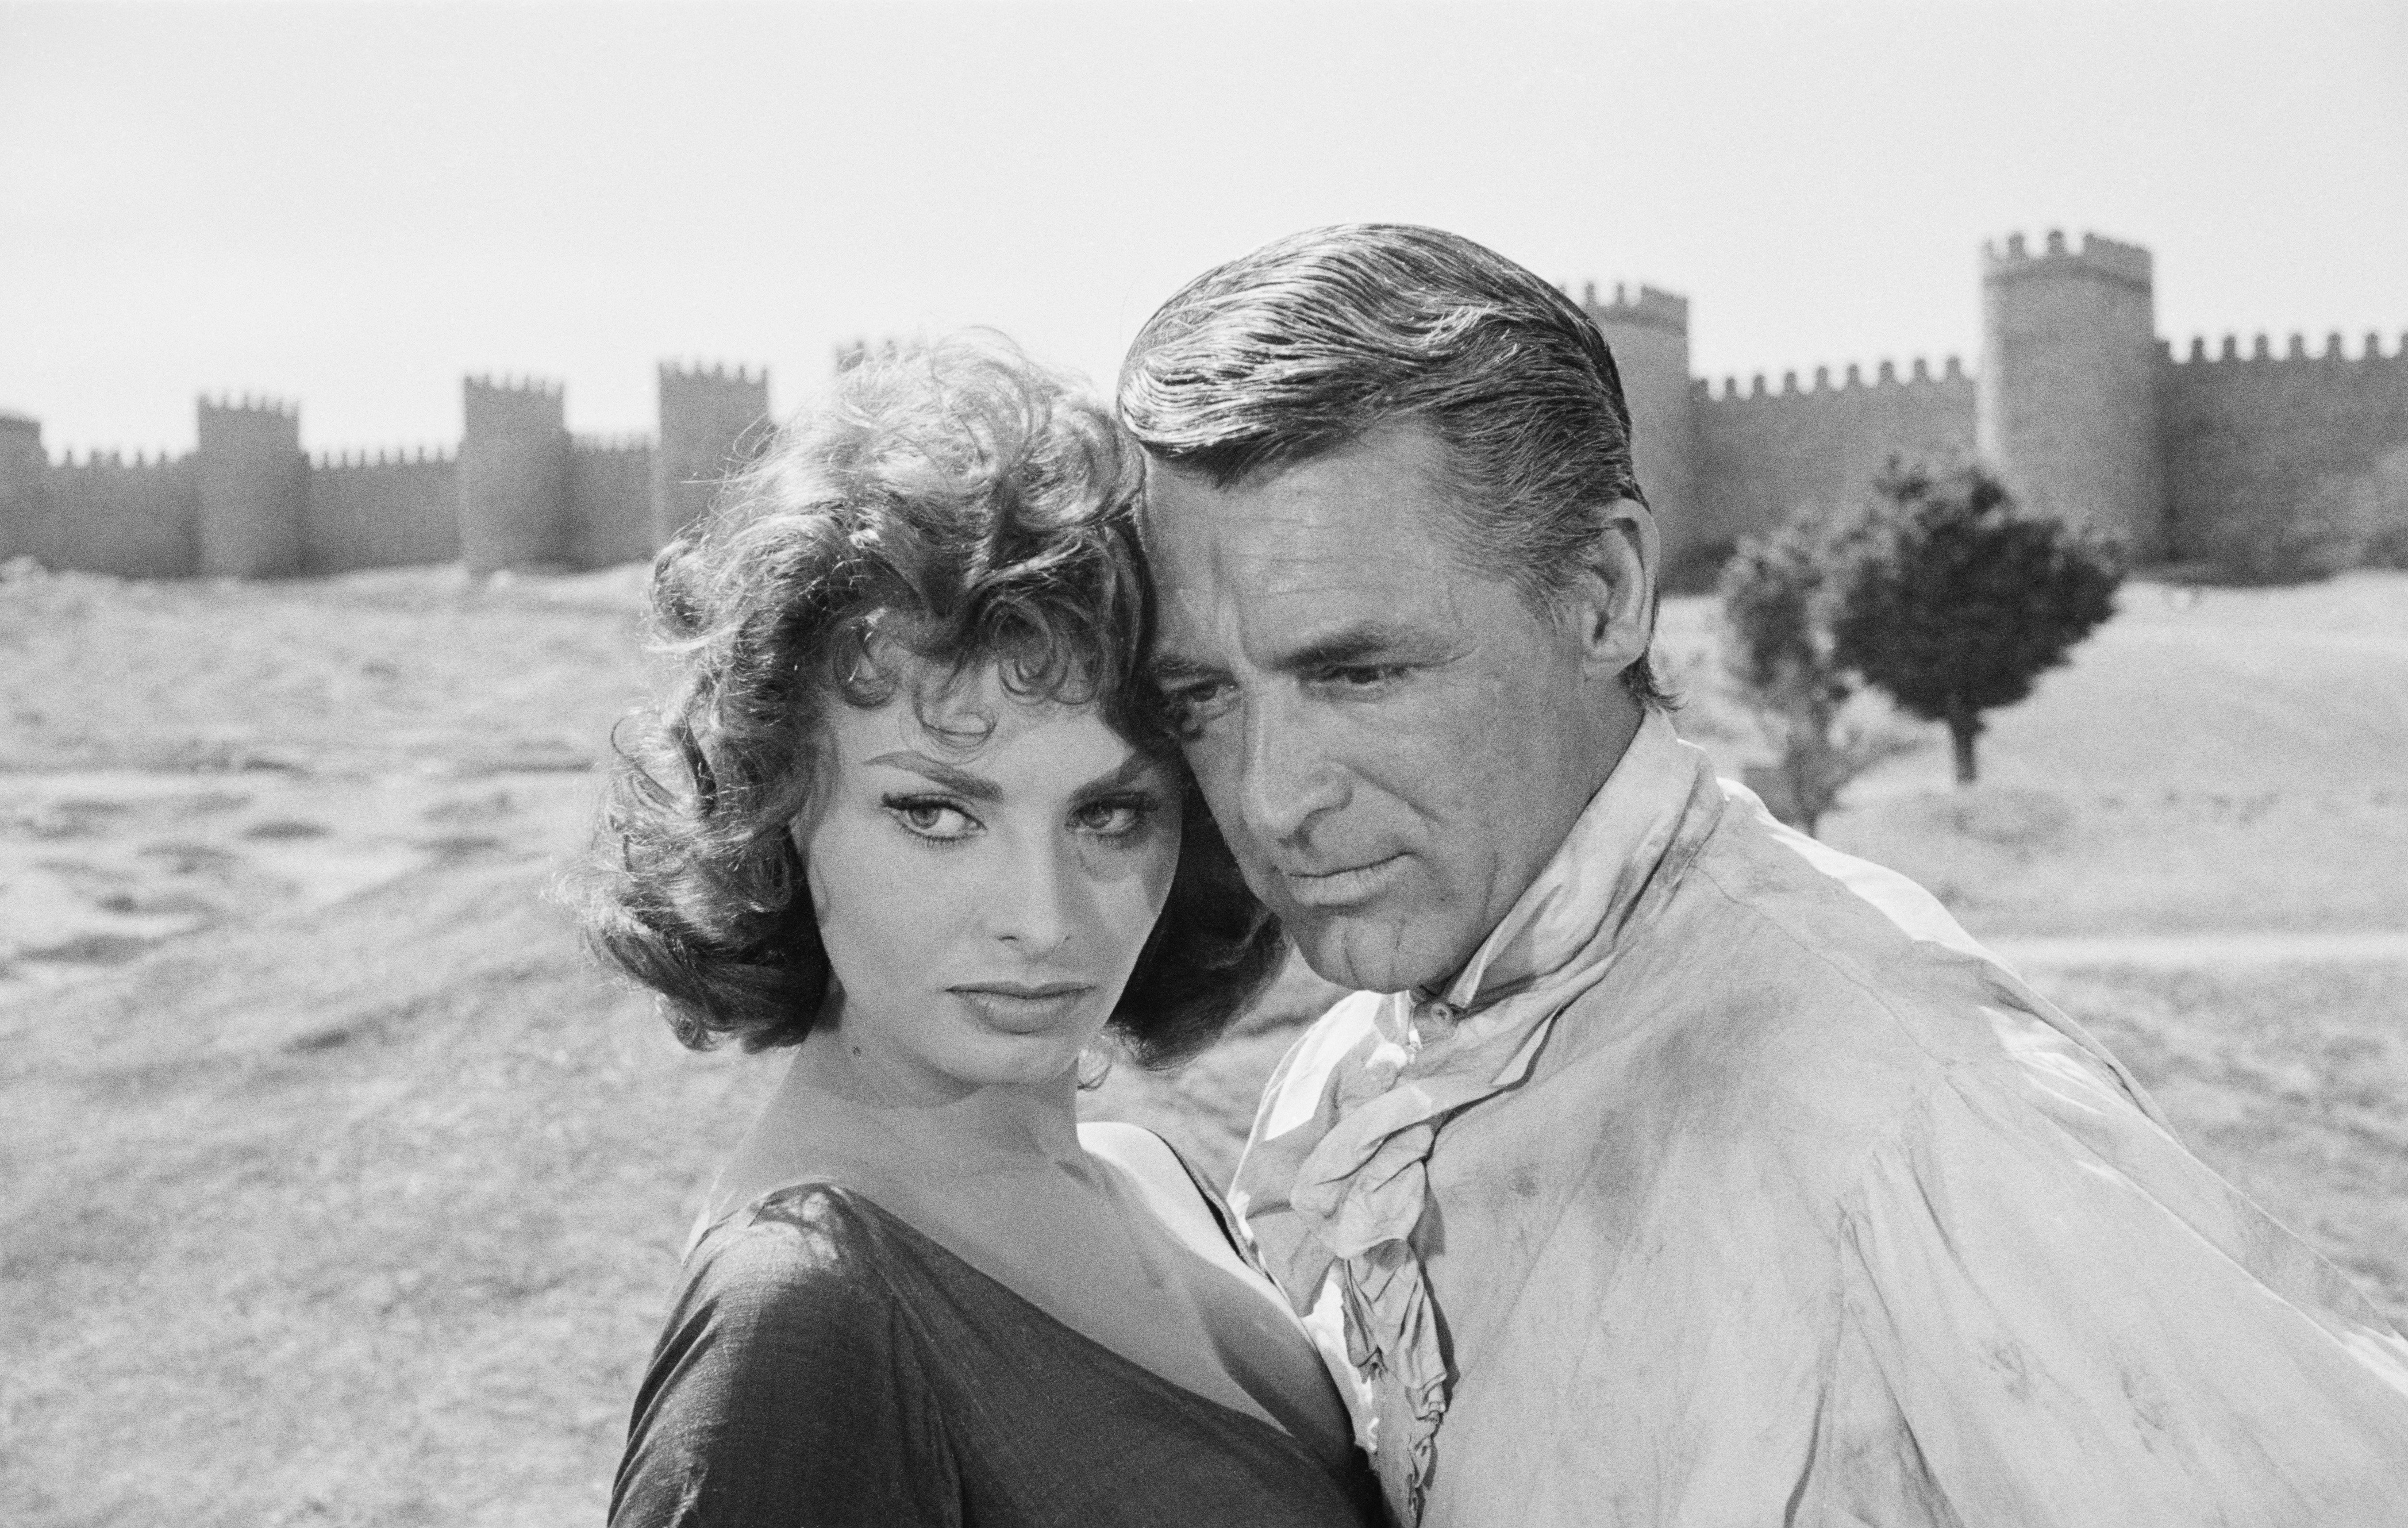 Sophia Loren y Cary Grant fuera de los muros de Ávila, España, durante el rodaje de "The Pride and the Passion", 1956. | Foto: Ernst Haas/Hulton Archive/Getty Images